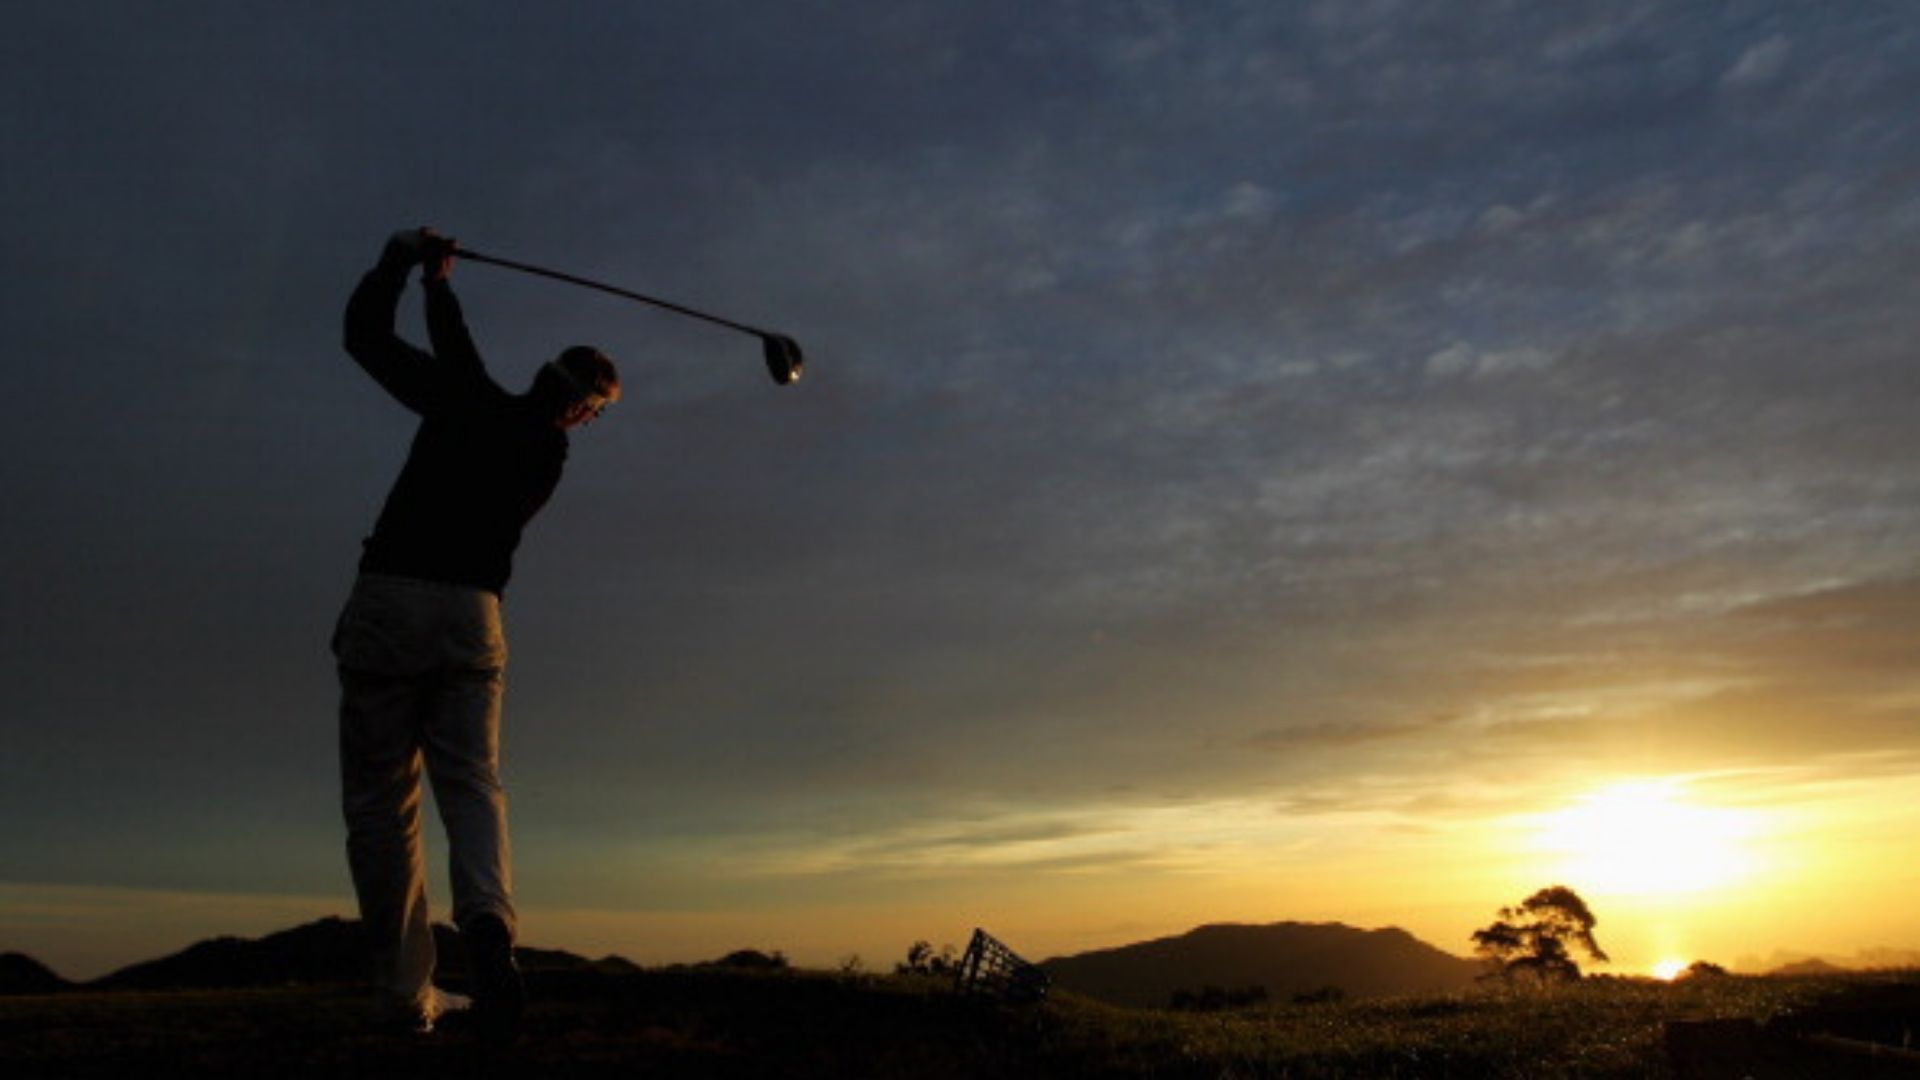 गोल्‍फ की दुनिया के 10 बड़े टूर्नामेंट जो हर किसी का हैं सपना, जानिए उनका इतिहास और अहमियत 